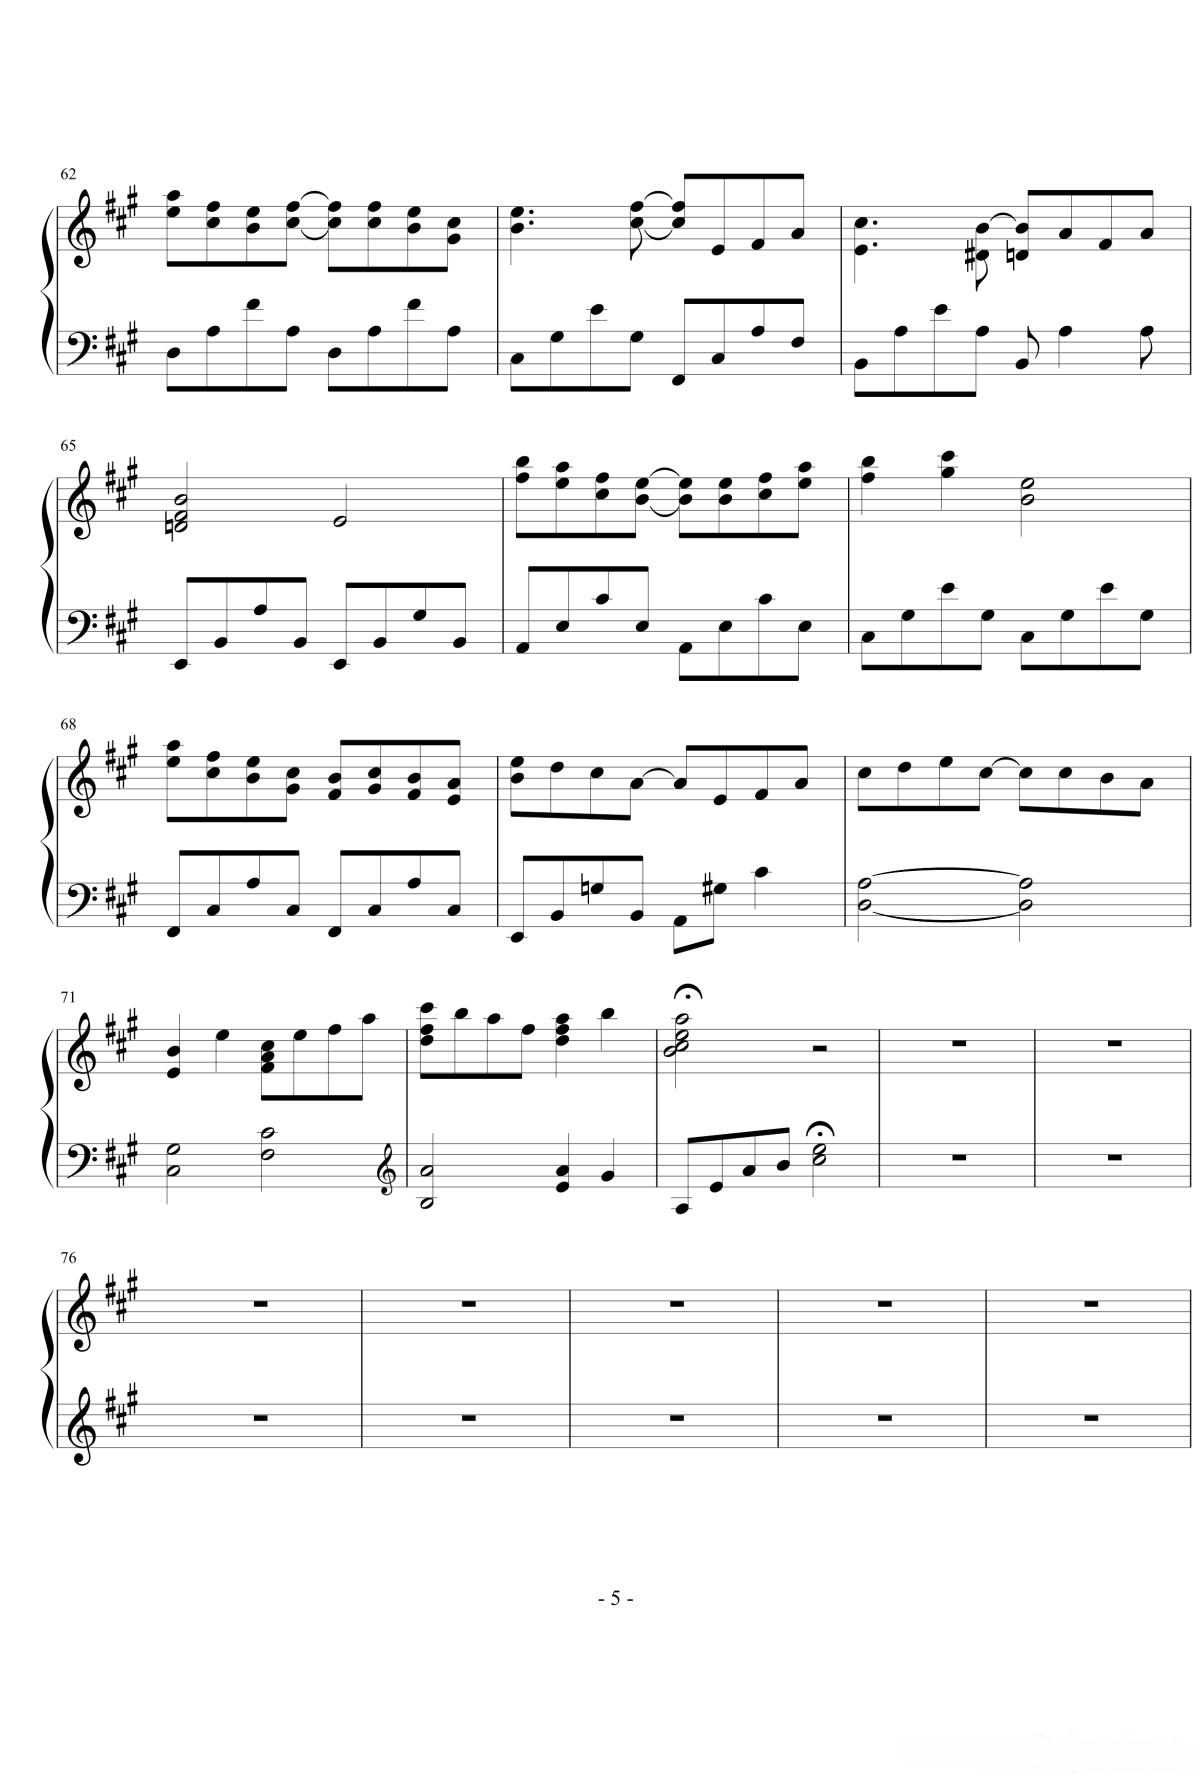 【和平之月】的钢琴谱简谱 – 渡边雅二